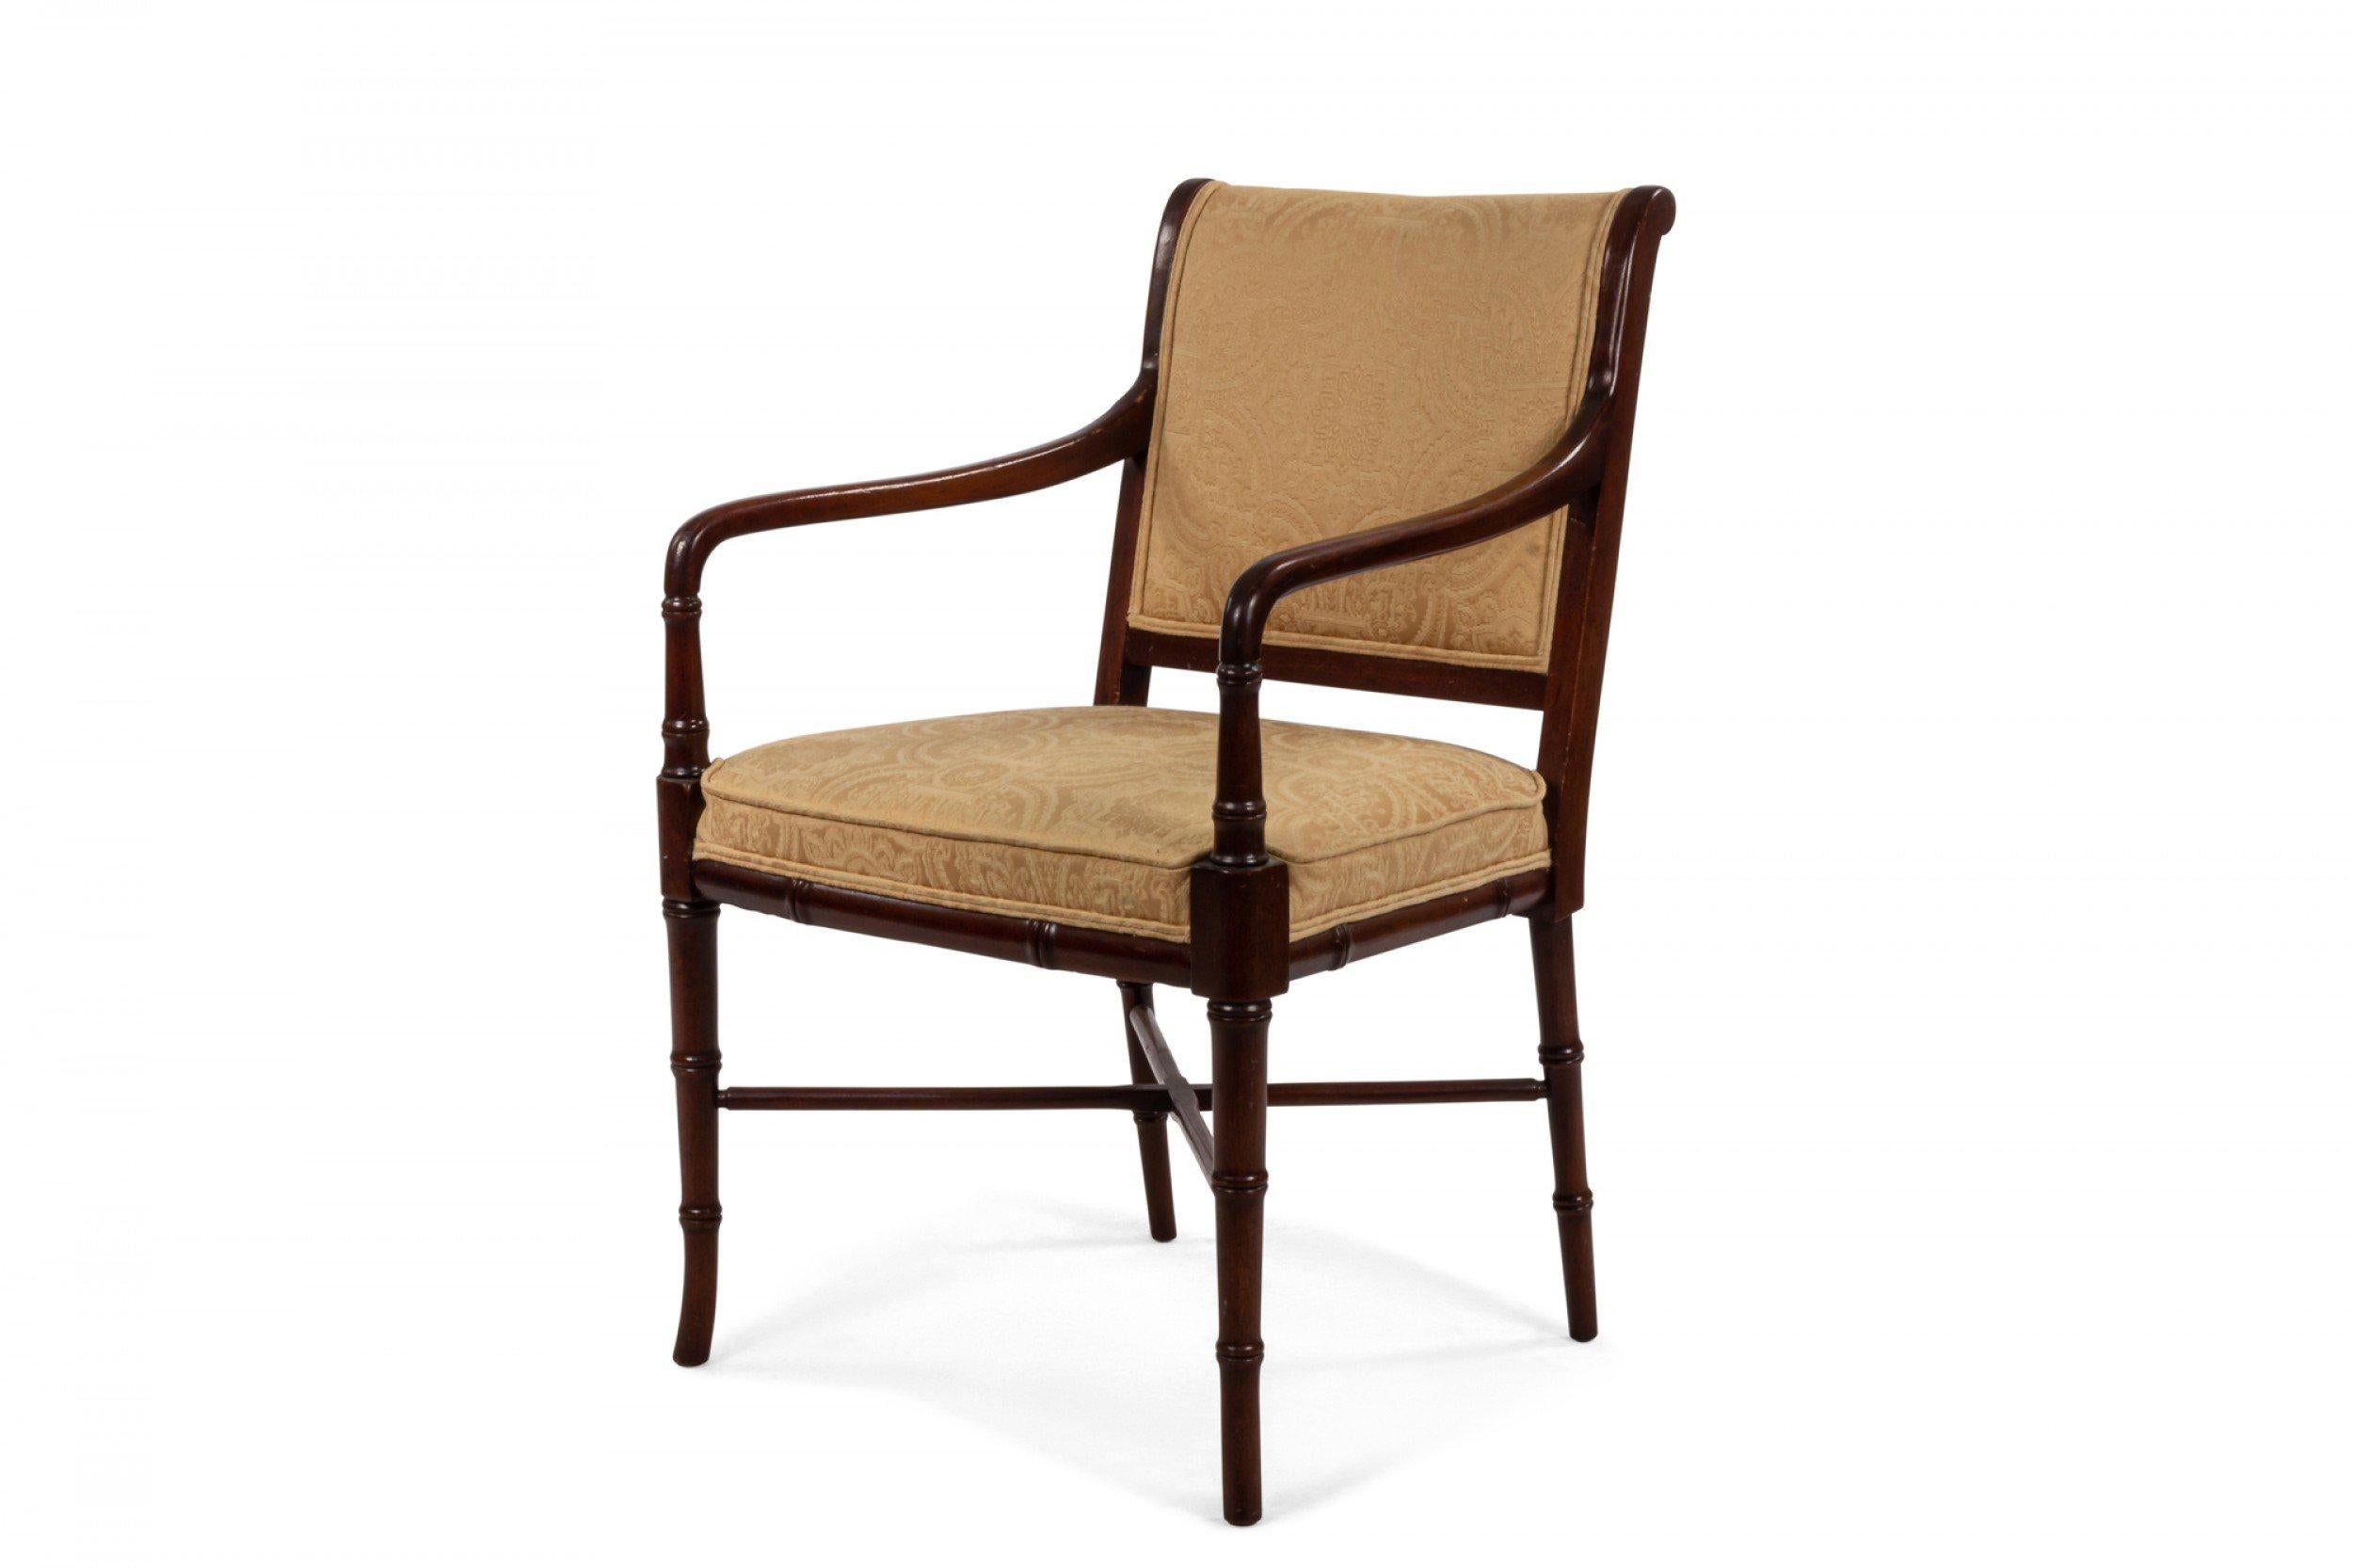 Satz von 6 mahagonifarbenen Sesseln im englischen Regency-Stil mit gelbem Damast gepolstertem Sitz und Rückenlehne, die auf gedrechselten Beinen aus Bambusimitat ruhen, die mit einer X-Bar-Strecke verbunden sind.